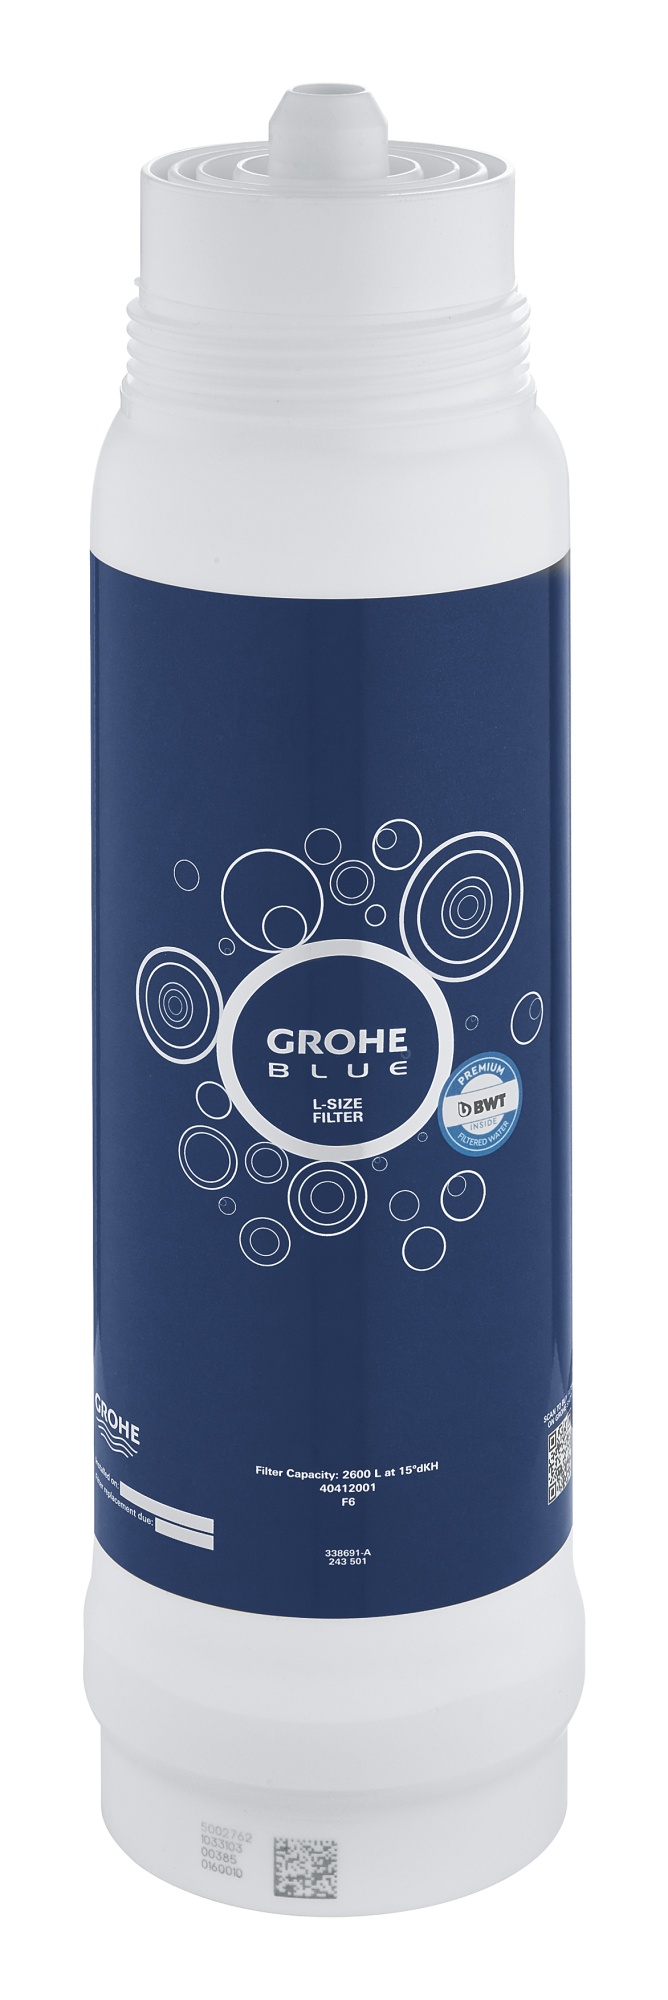 Фильтр для водных систем Grohe Blue 40412001 L-Size, без насадки